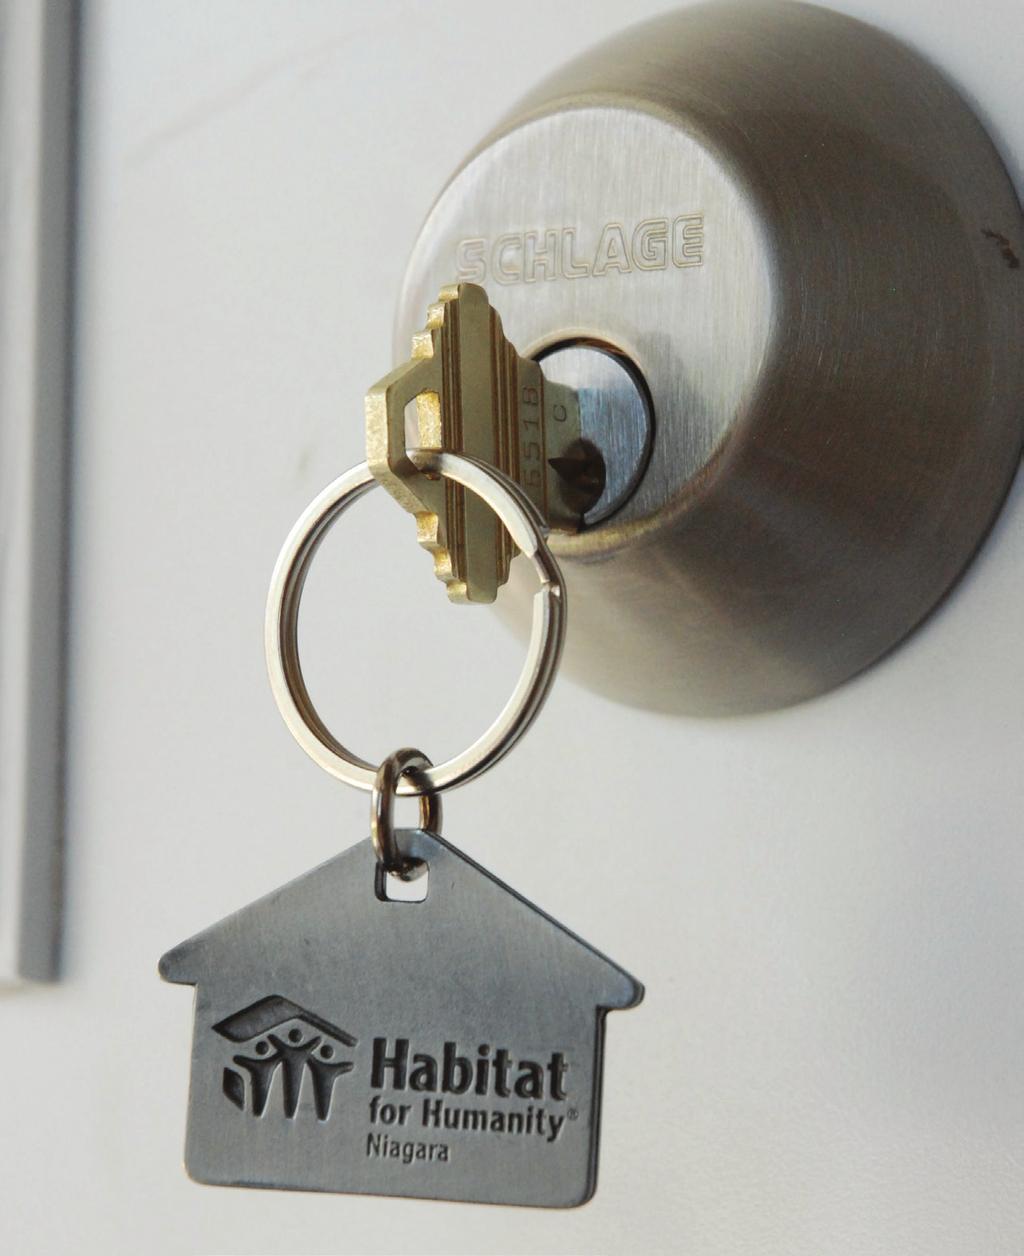 La hipoteca La hipoteca de Habitat for Humanity es muy singular y presenta los siguientes términos: Nota: los términos de la hipoteca están sujetos a cambios.